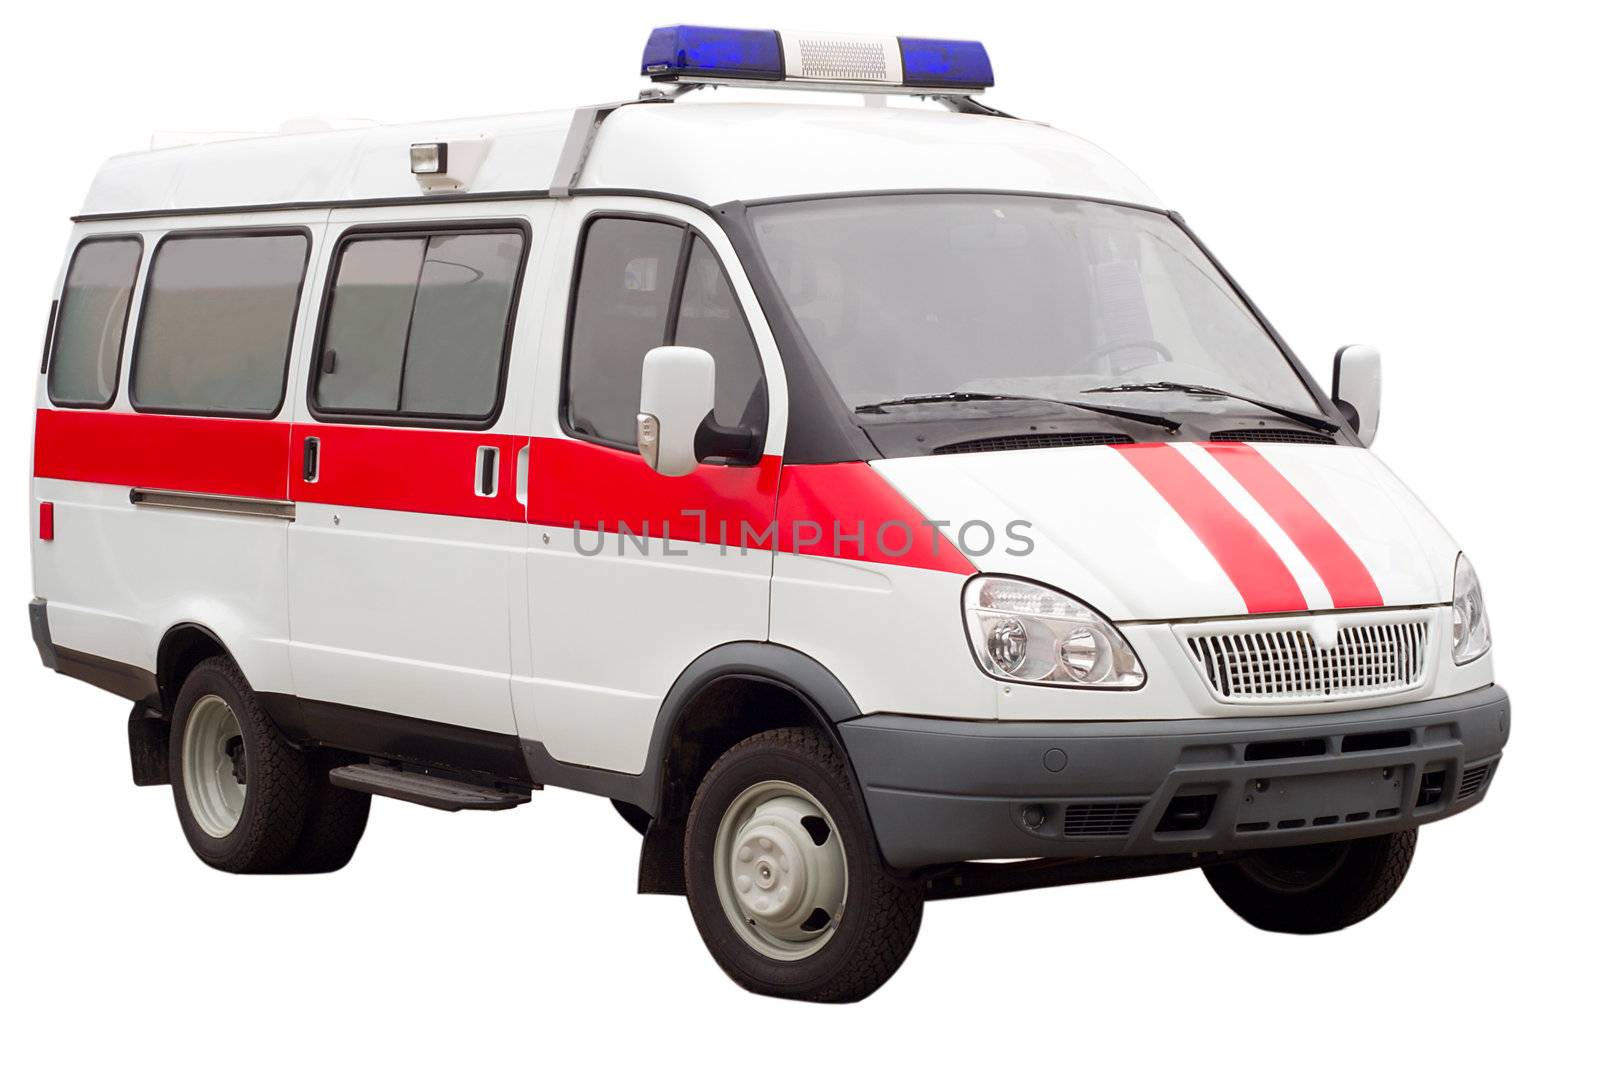 ambulance car, isolated on white